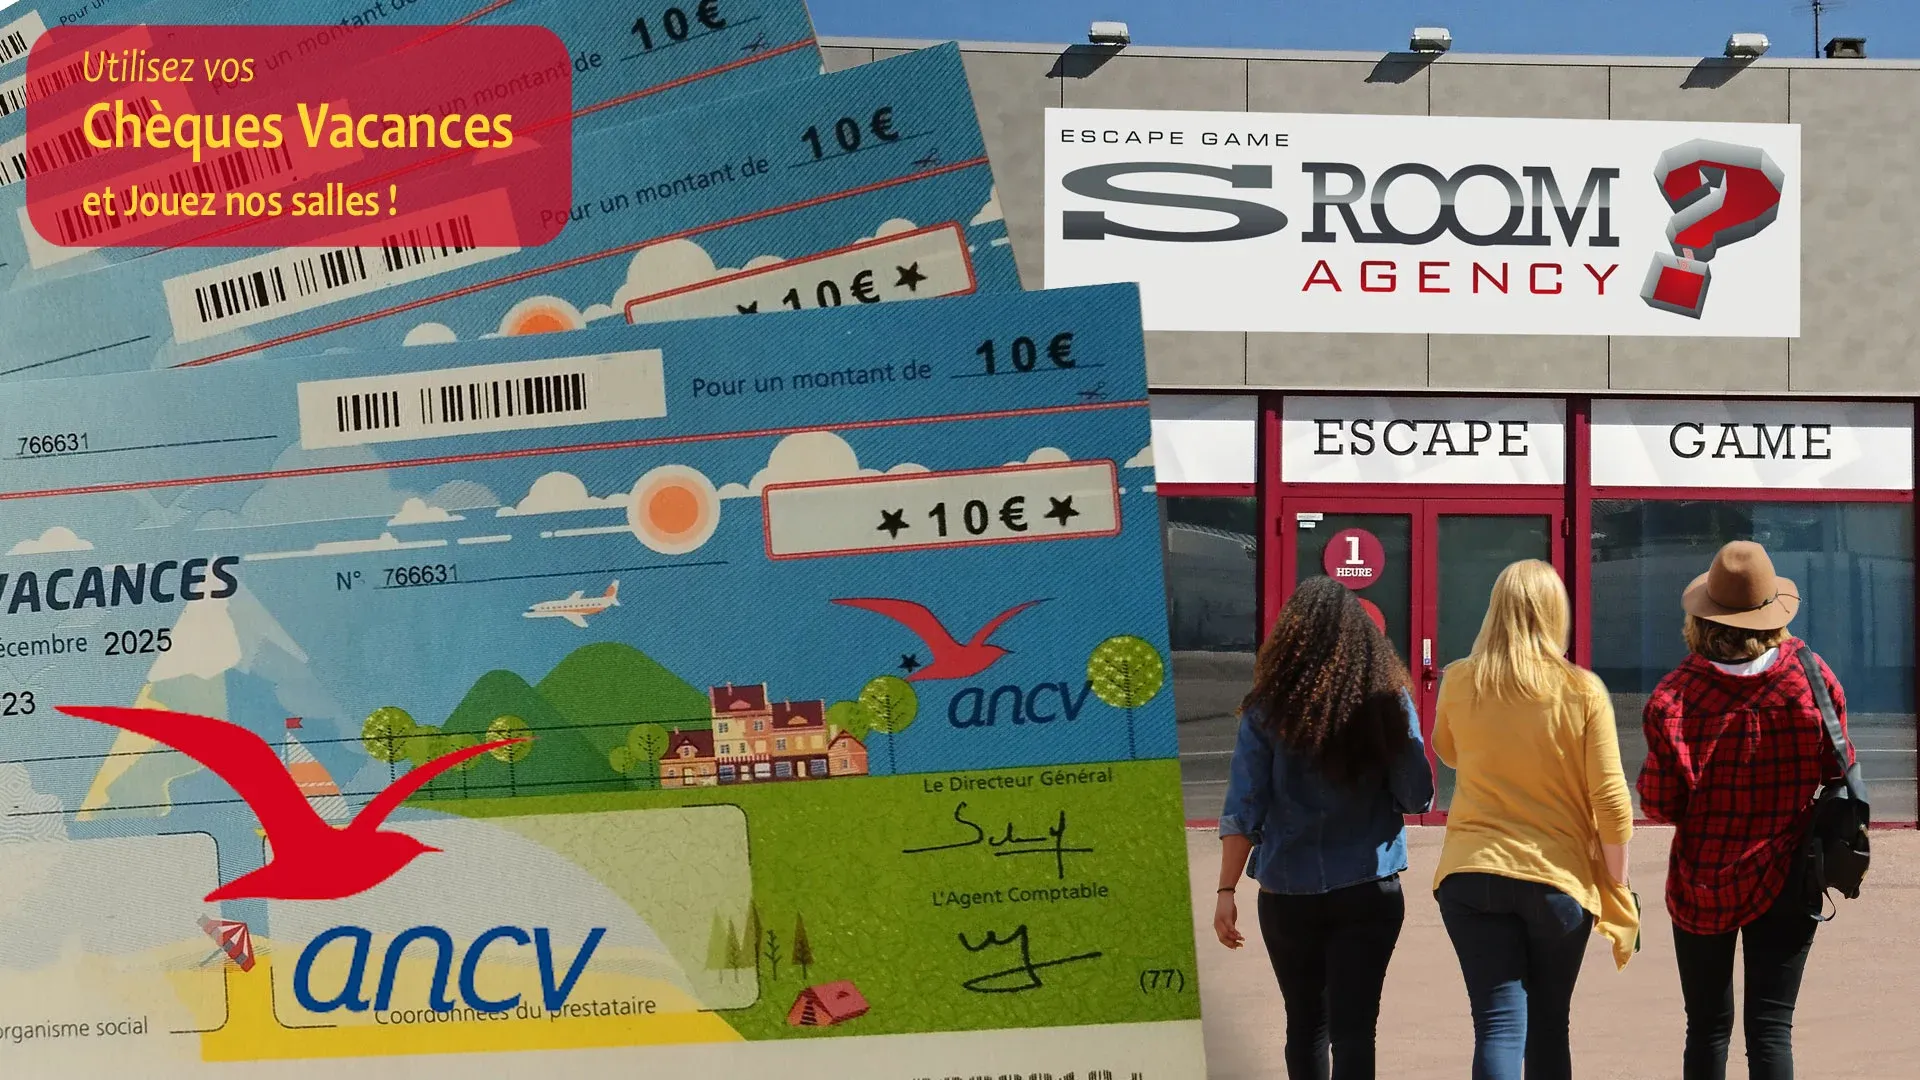 Utilisation chèques vacances ANCV en Escape Game Montauban S Room Agency